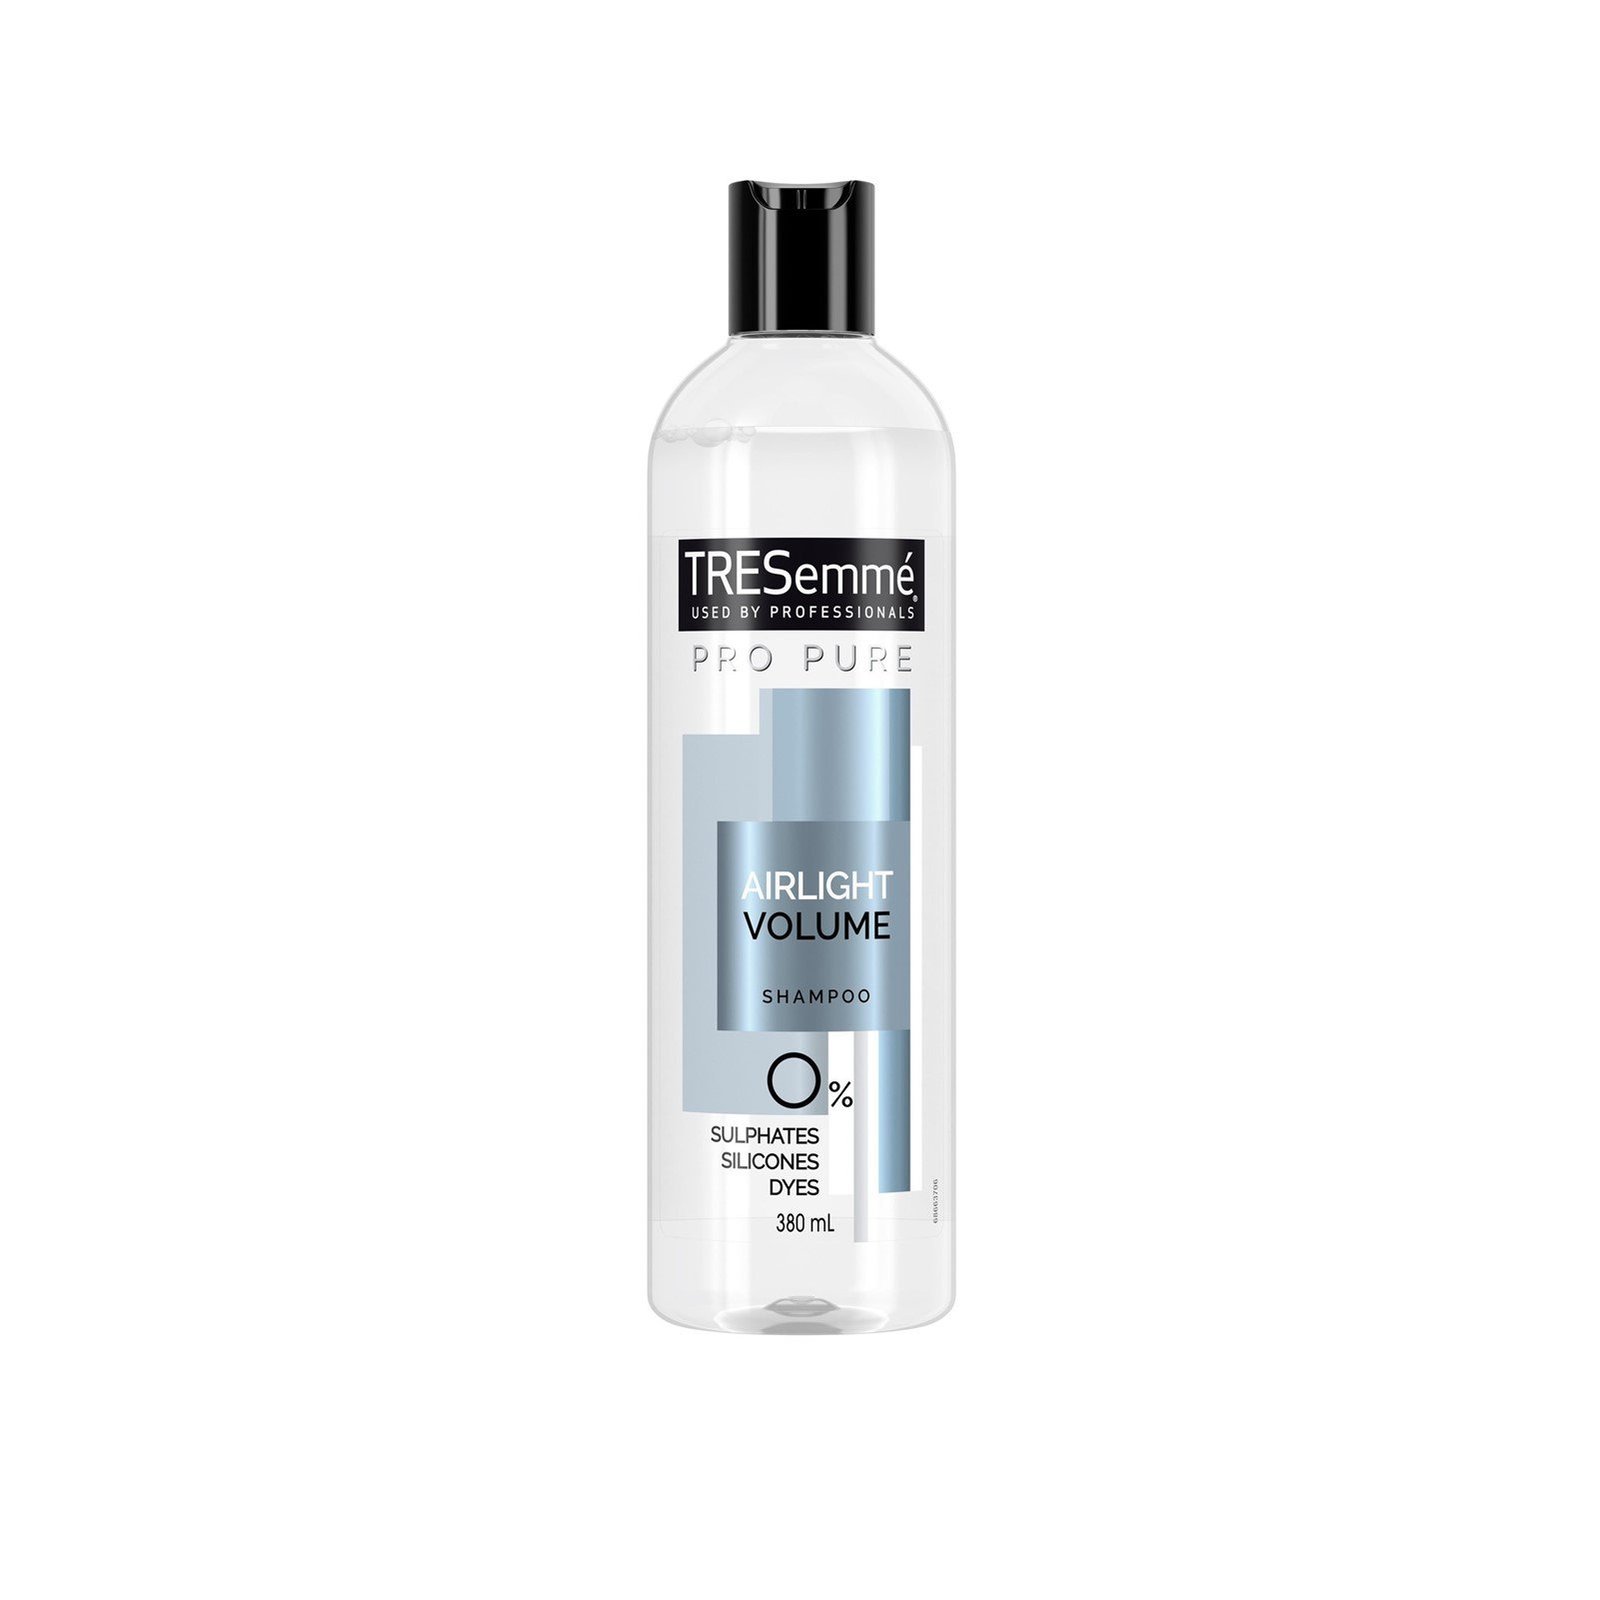 TRESemmé Pro Pure Airlight Volume Shampoo 380ml (12.8 fl oz)